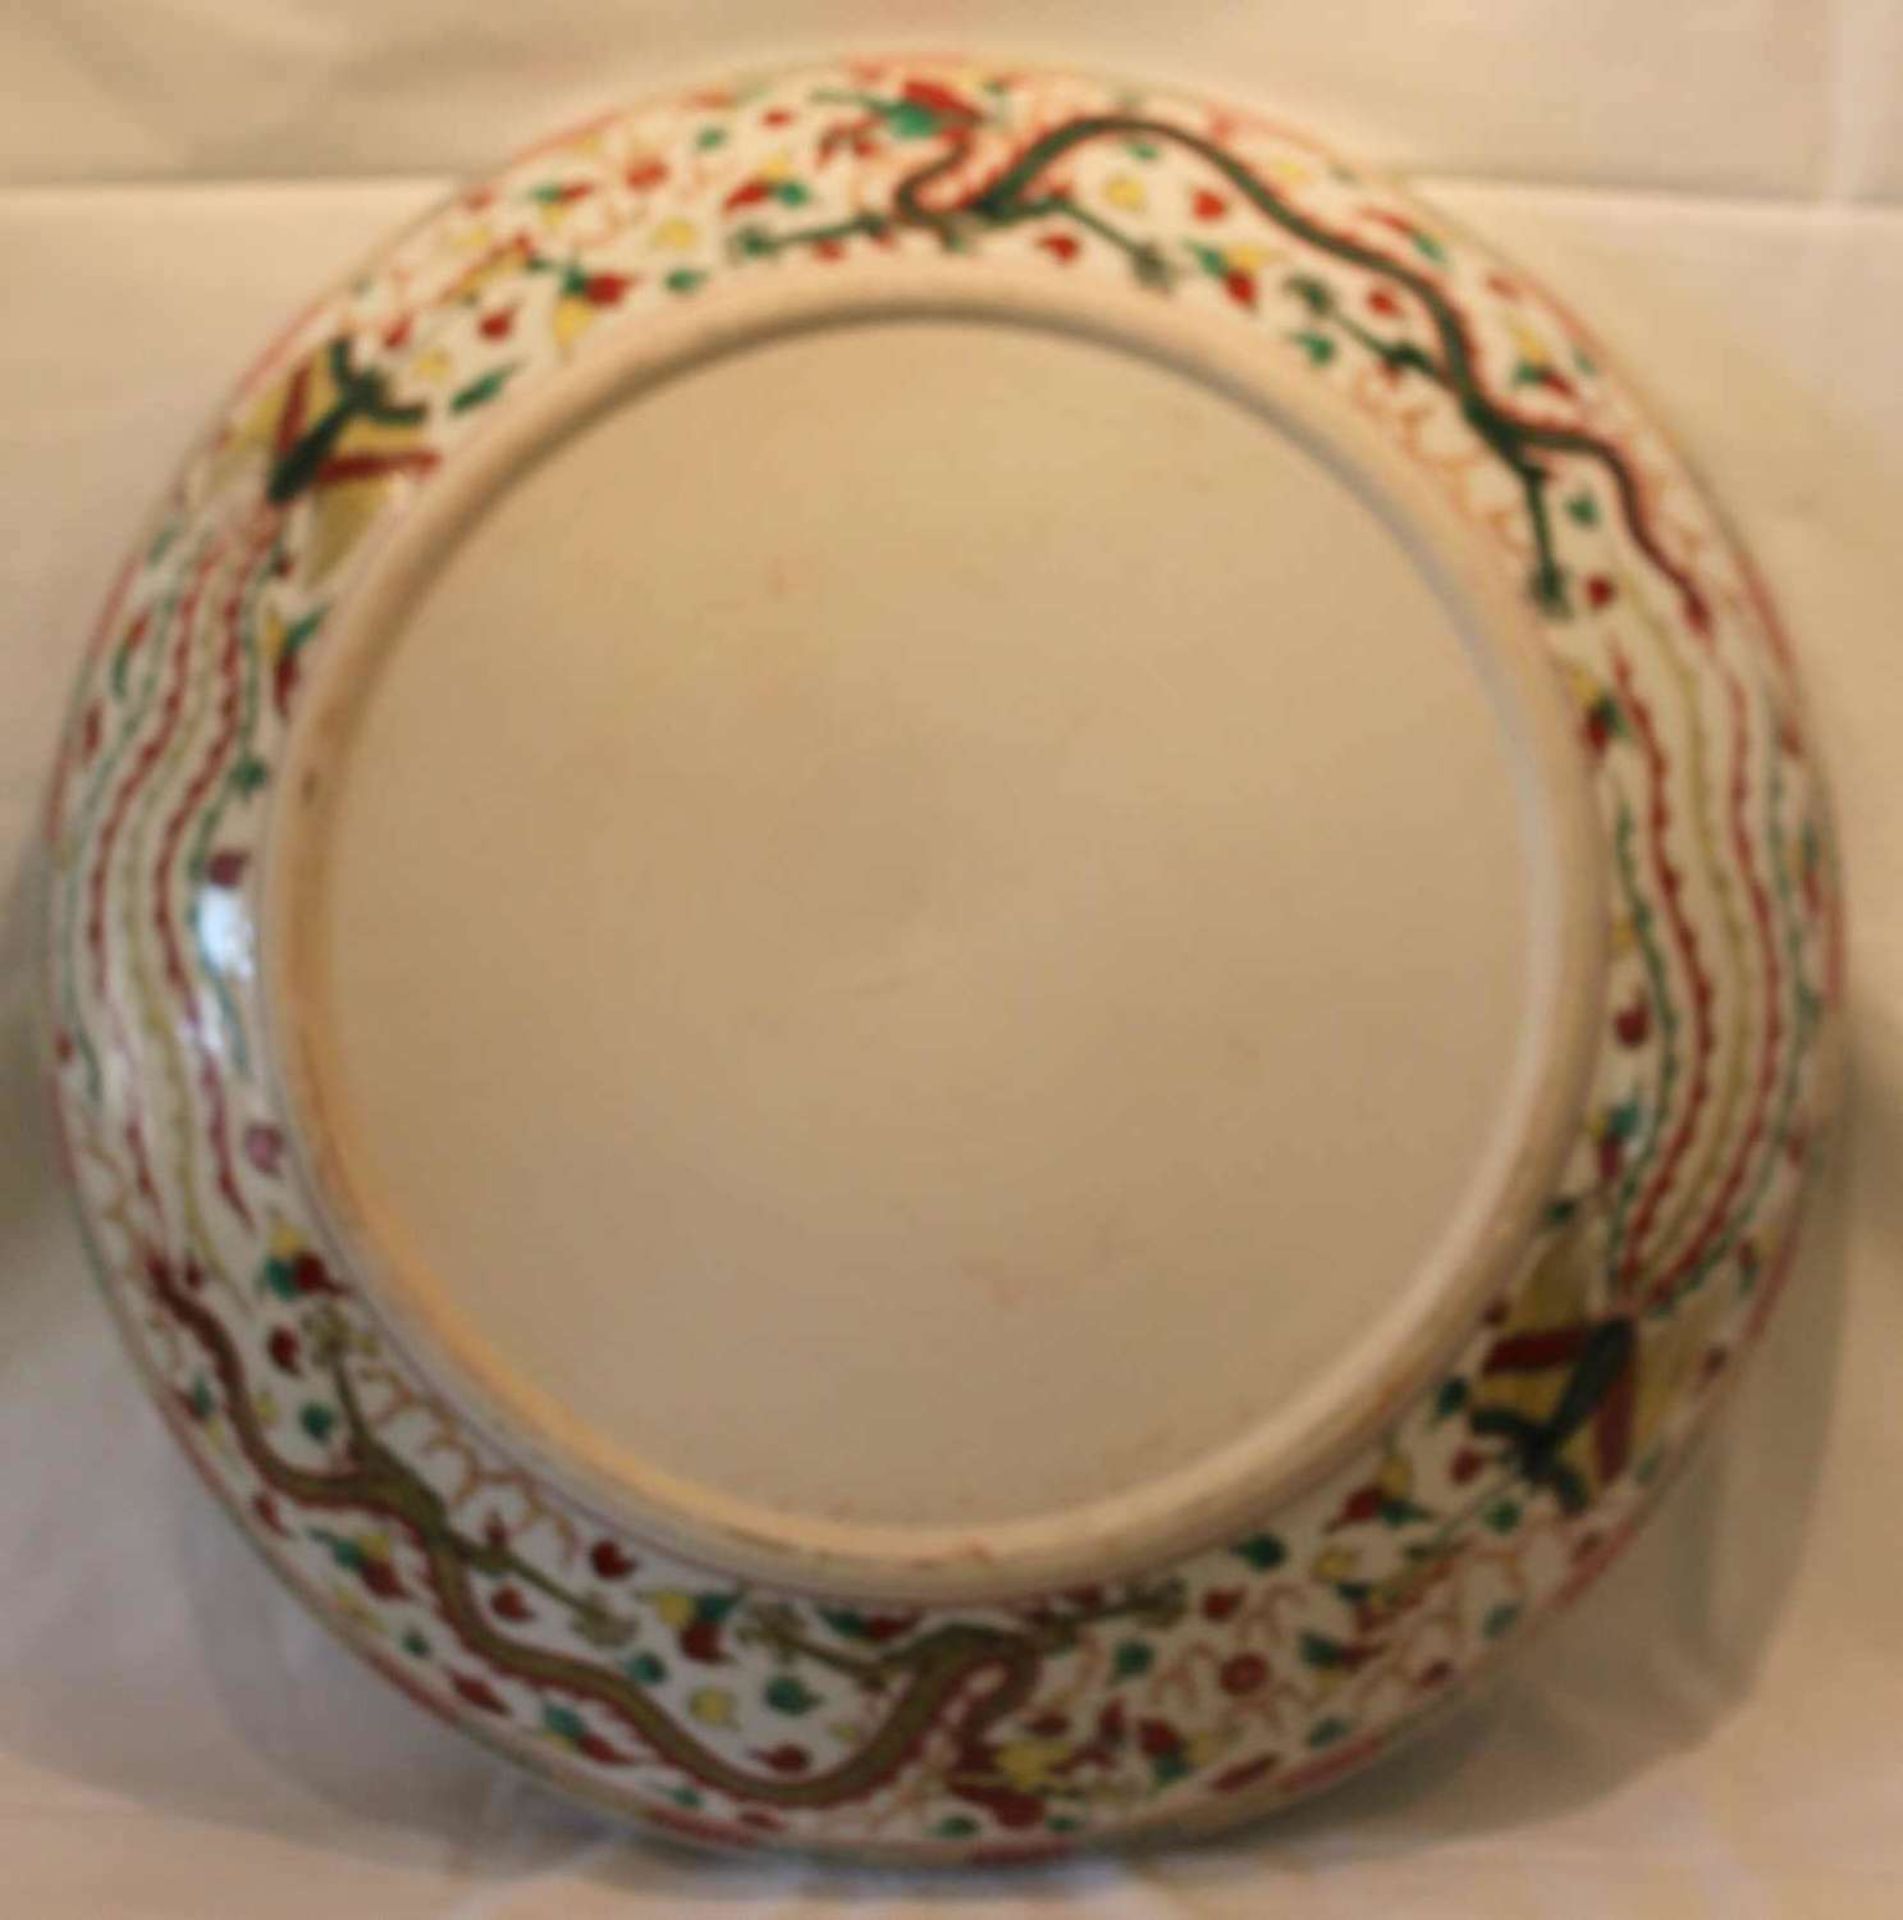 Porzellan Teller, Ming Dynastie Stil Wu Tsai, Drachen und Phönix. Durchmesser ca. 56 cm - Bild 5 aus 7